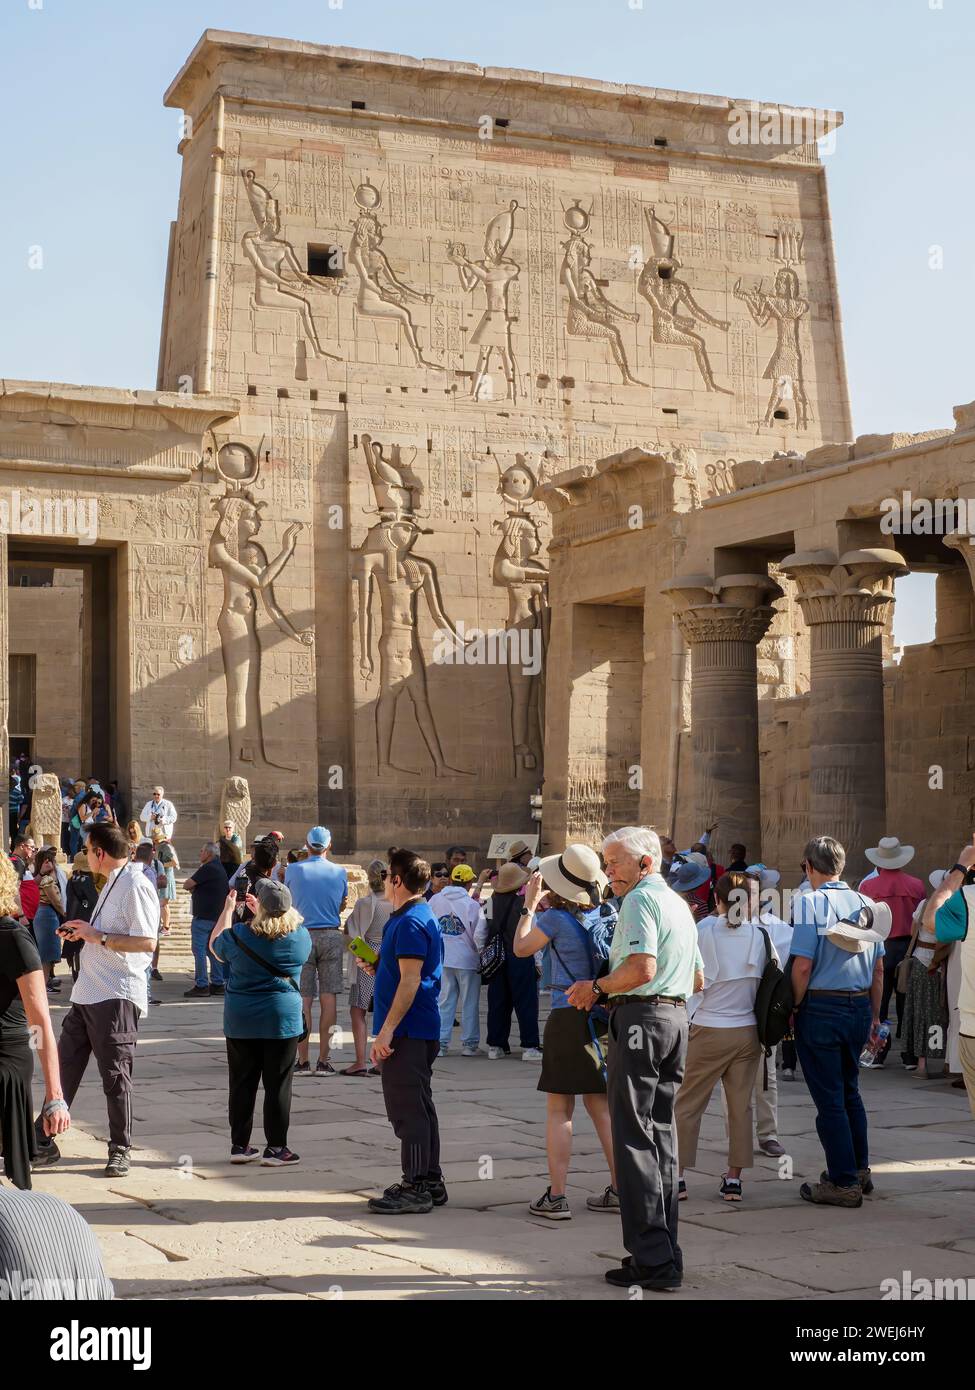 Touristes au complexe de temples Philae, le Temple d'Isis, actuellement sur l'île d'Agilkia, Egypte. Banque D'Images